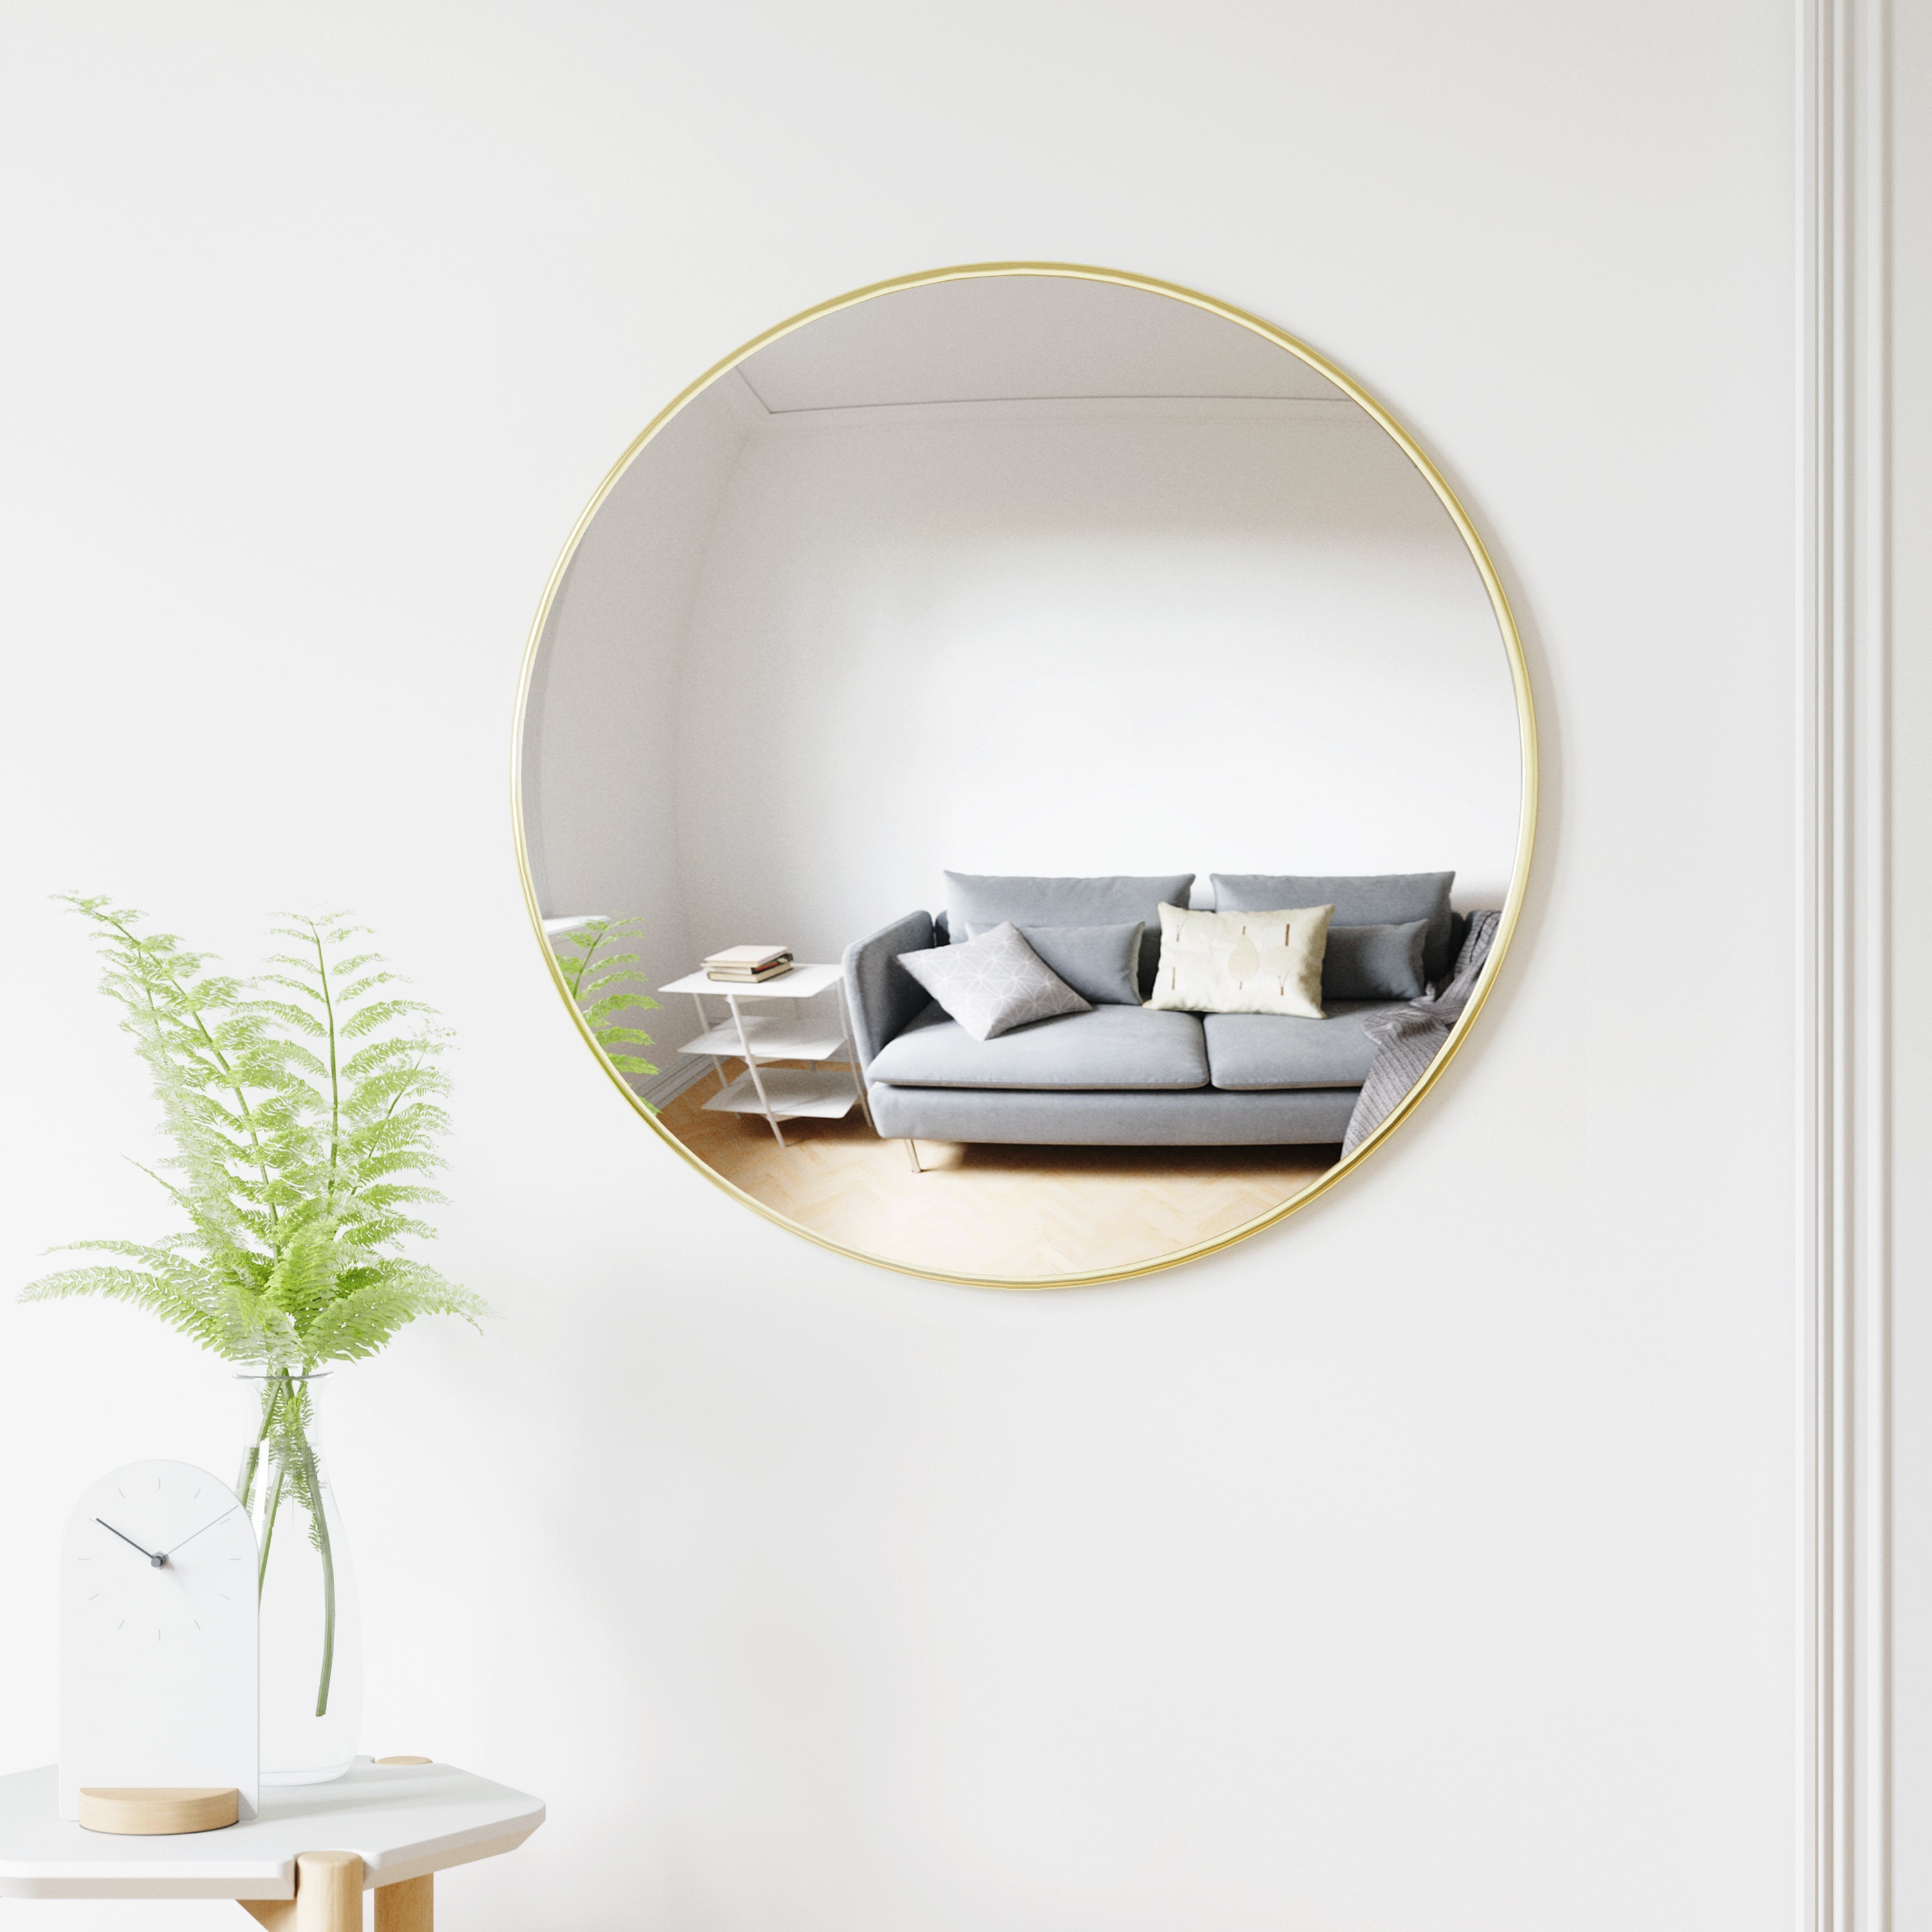 Konvexspiegel ✔️Deko-Spiegel jetzt kaufen - für die Wohnung